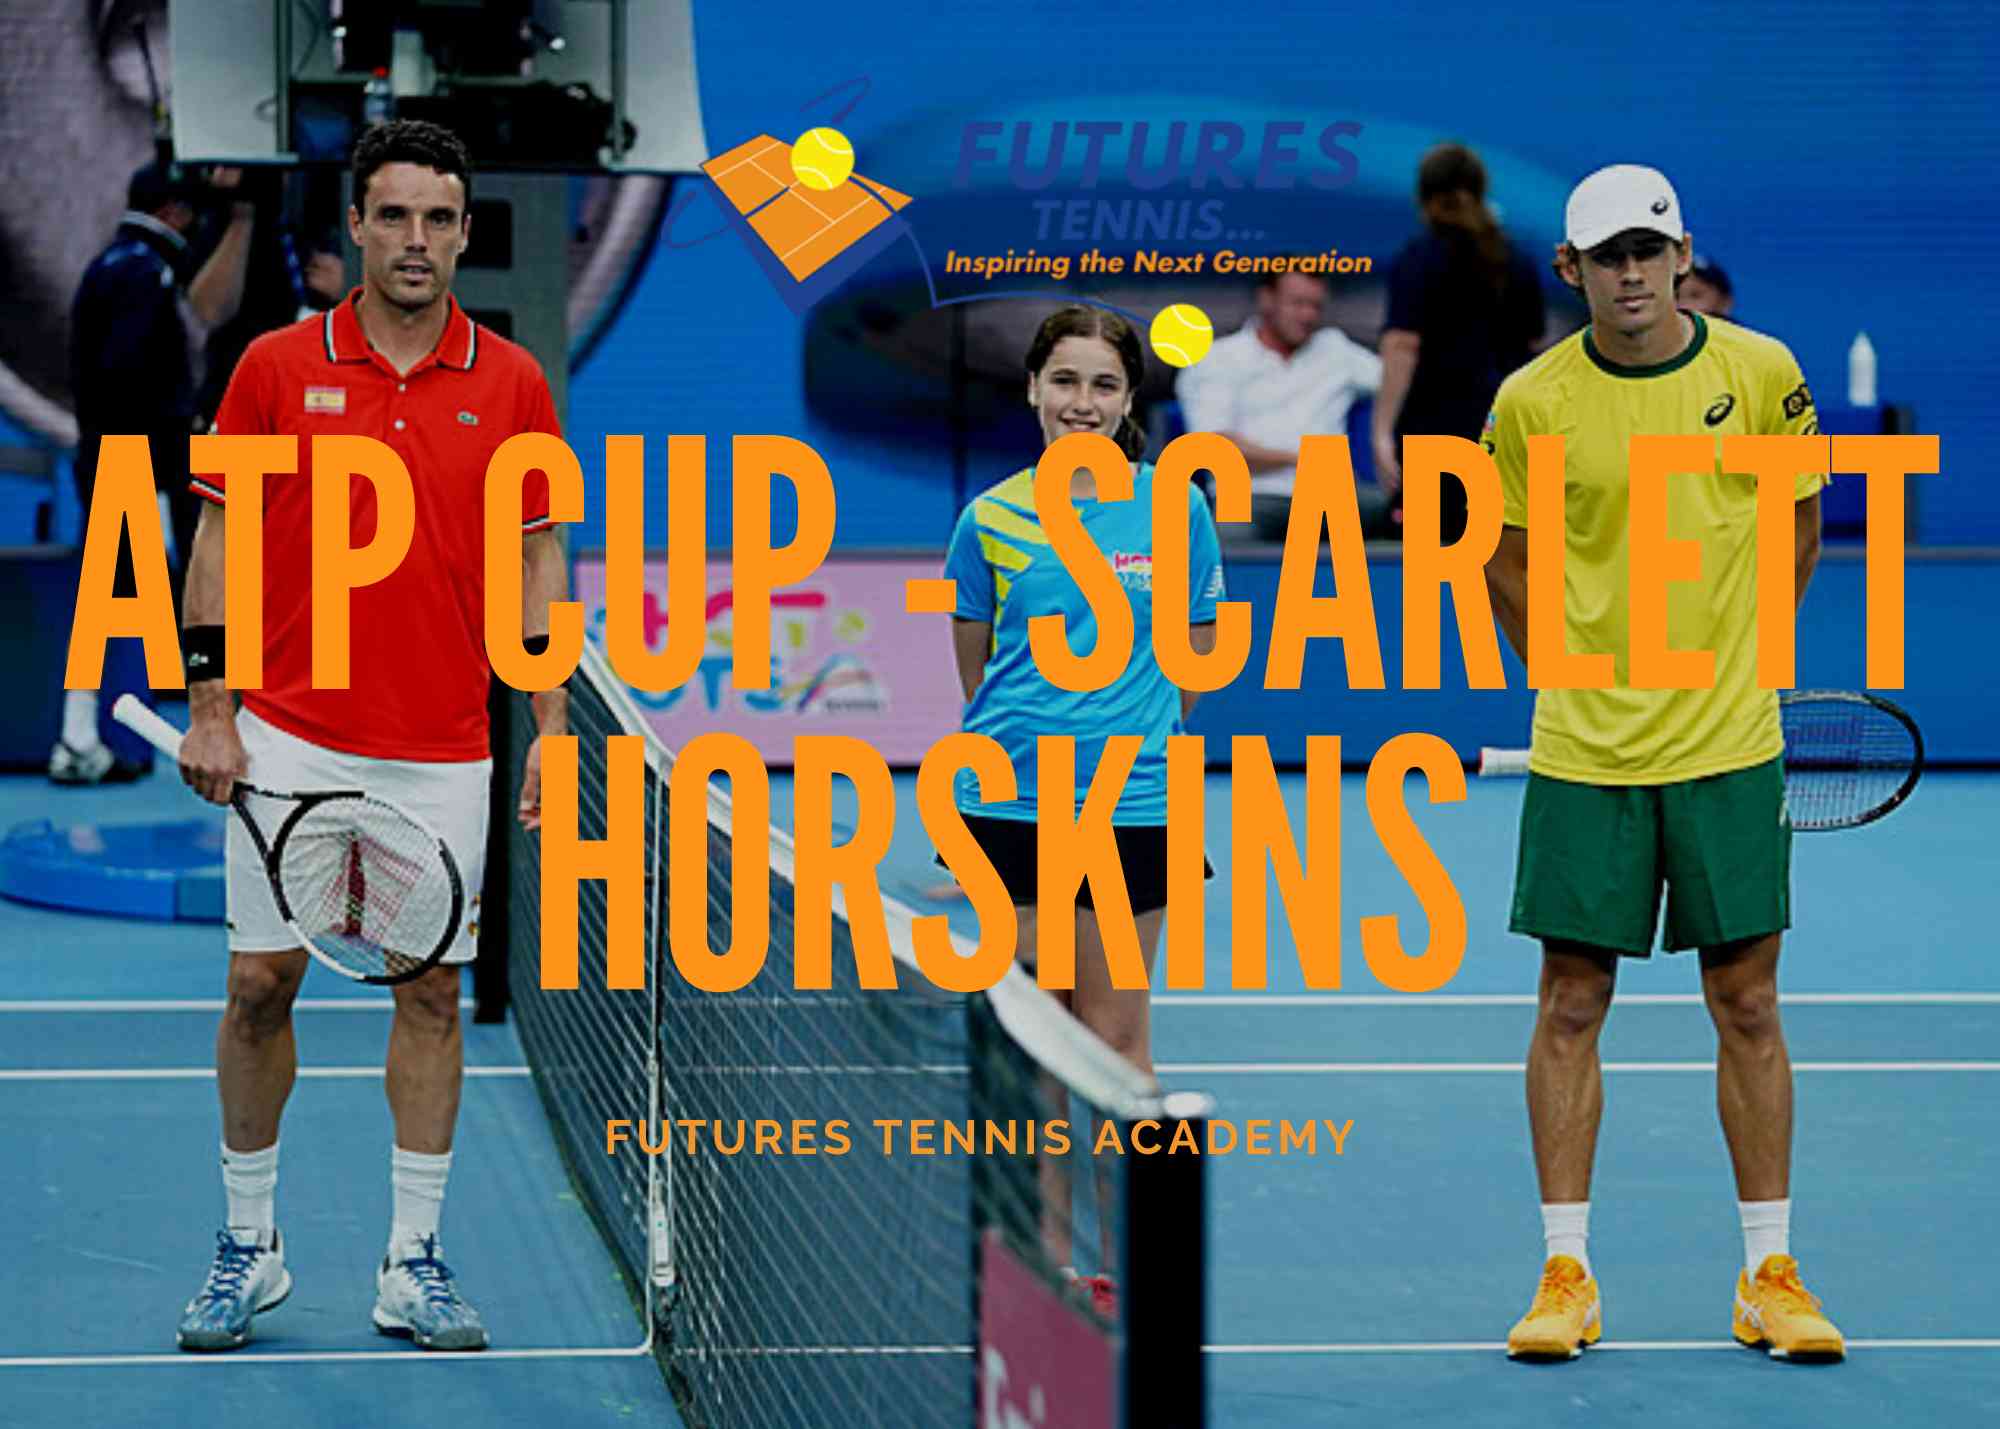 ATP CUP – Scarlett Horskins